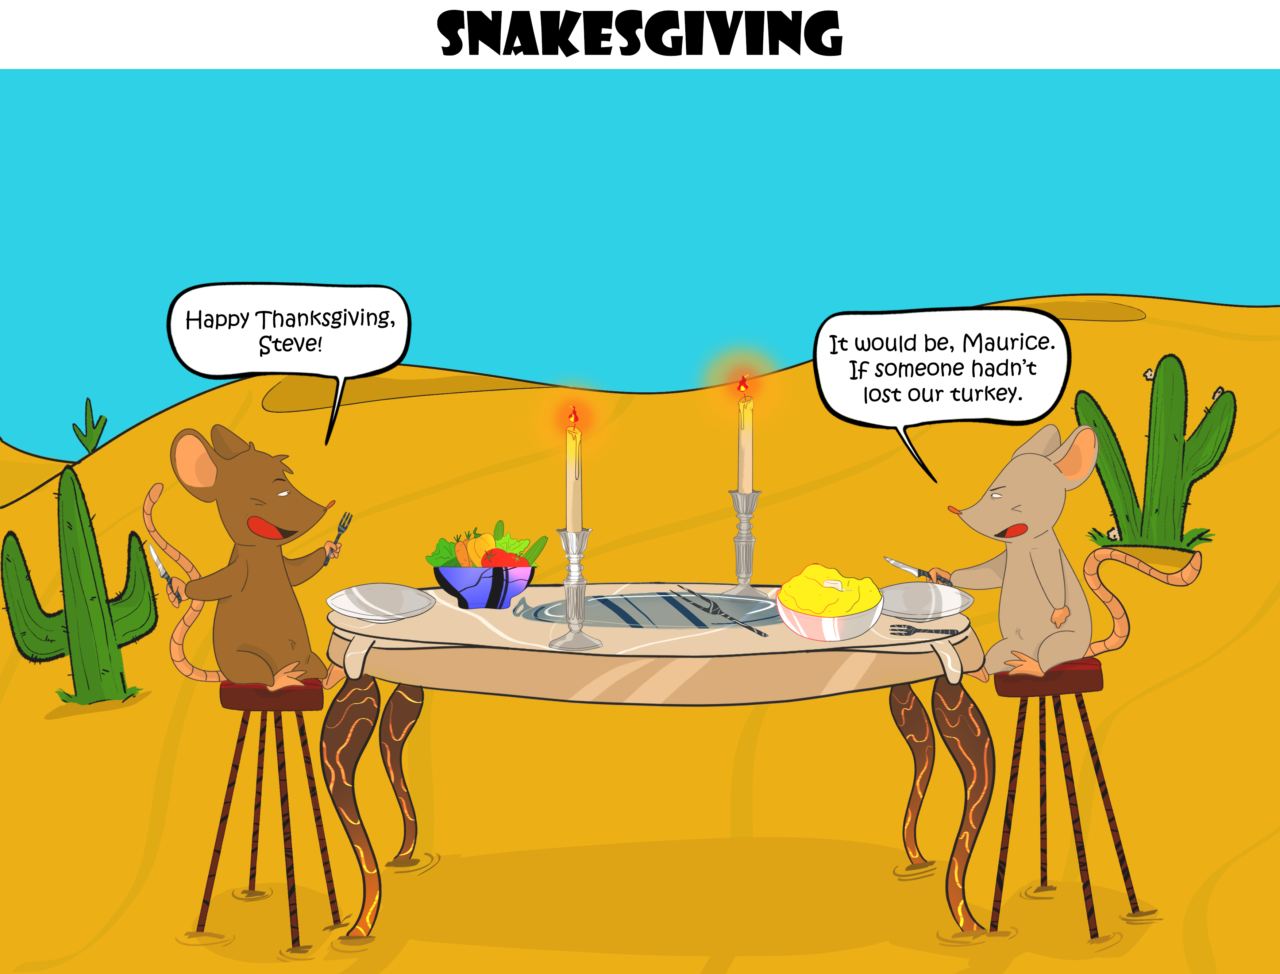 5- Snakesgiving